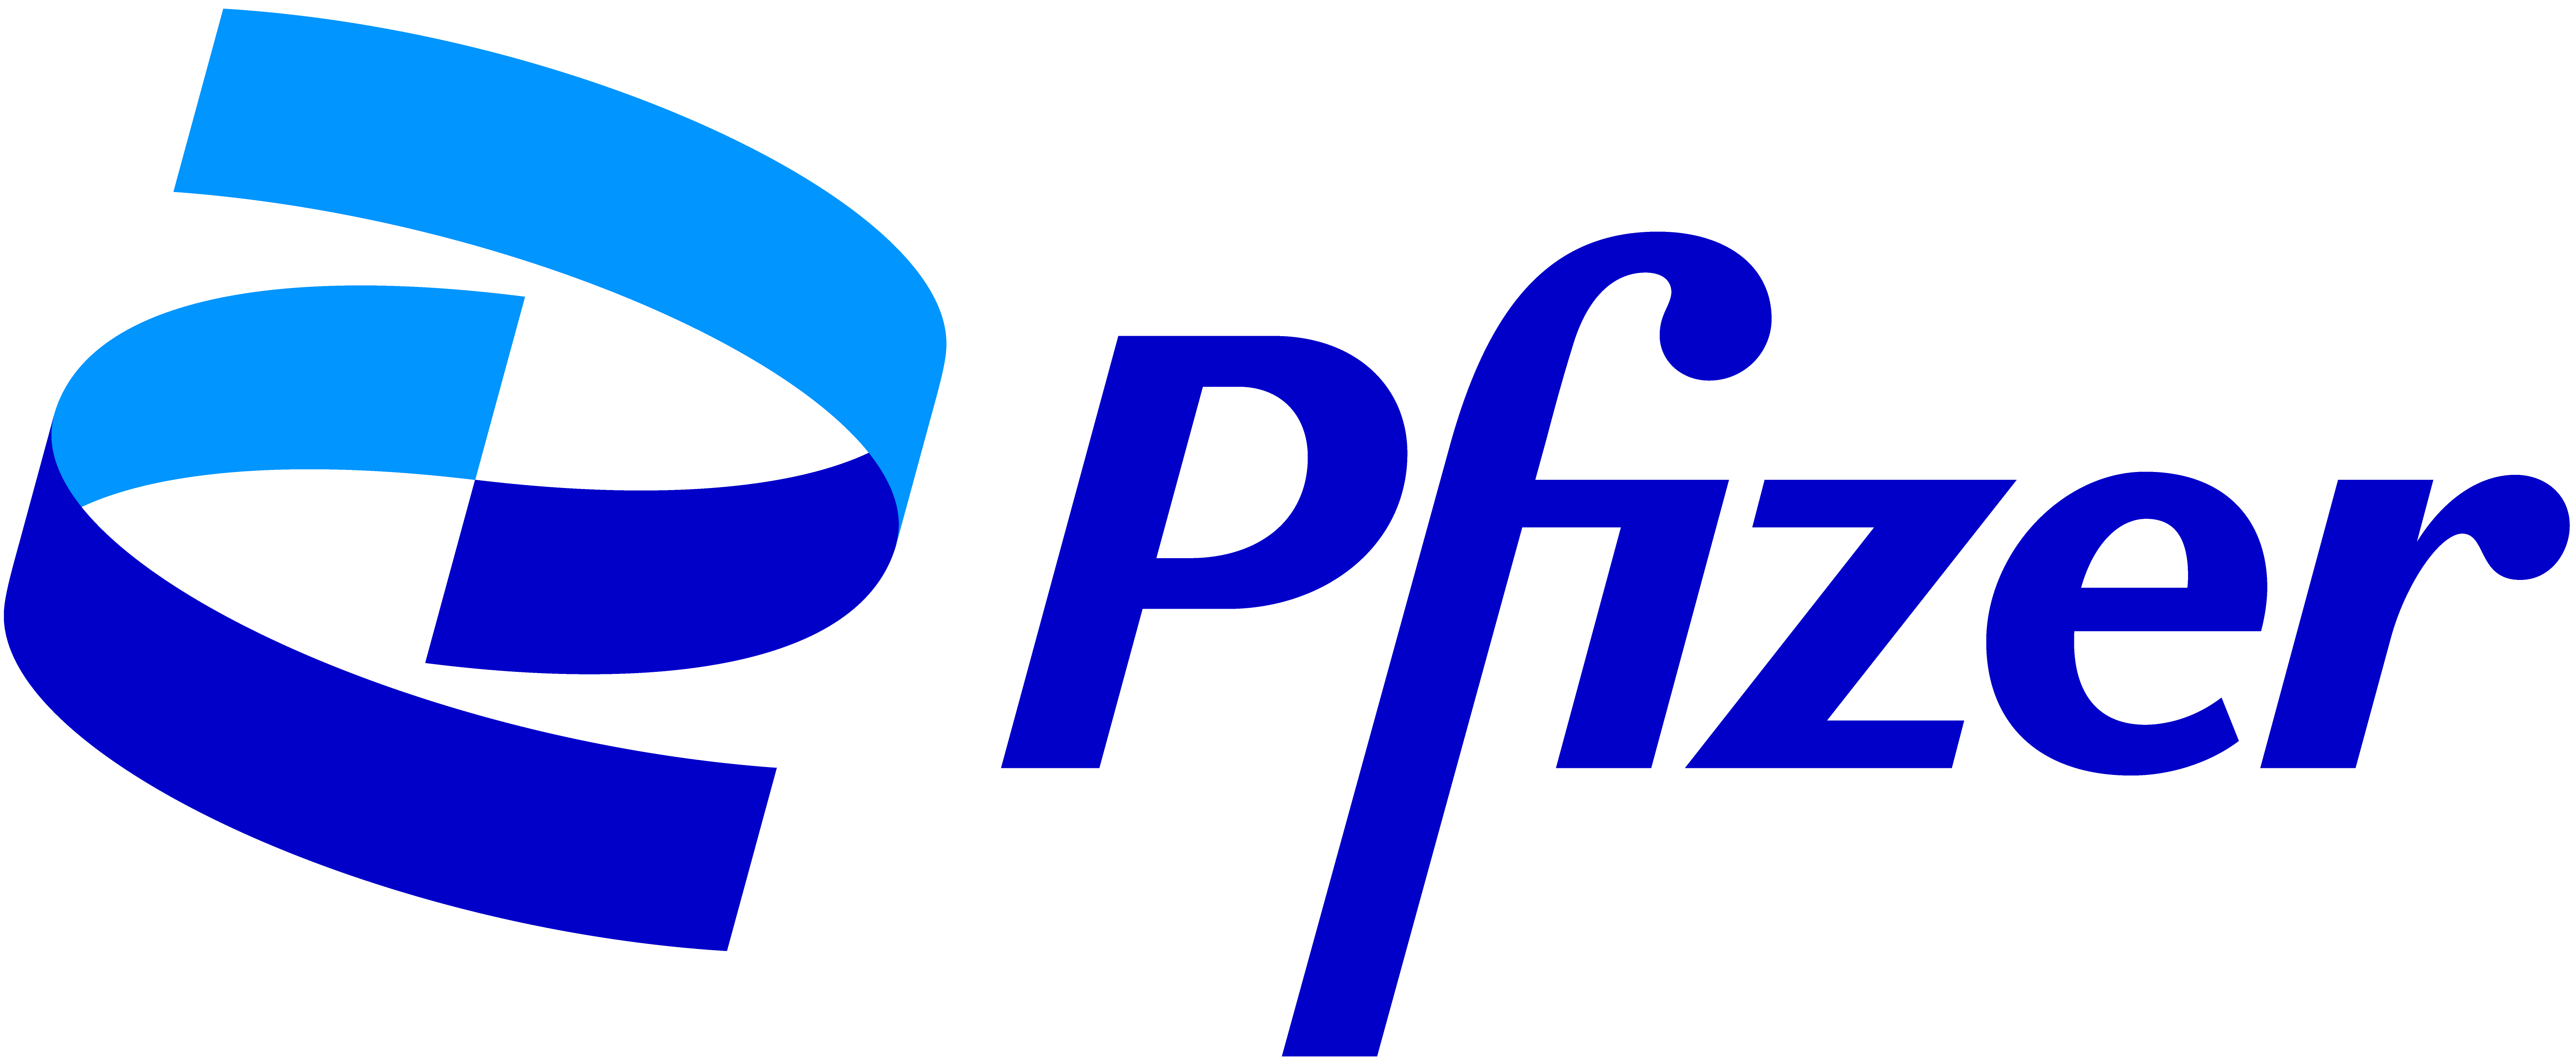 Logo de Pfizer. Ensemble, vers un monde en meilleure santé.